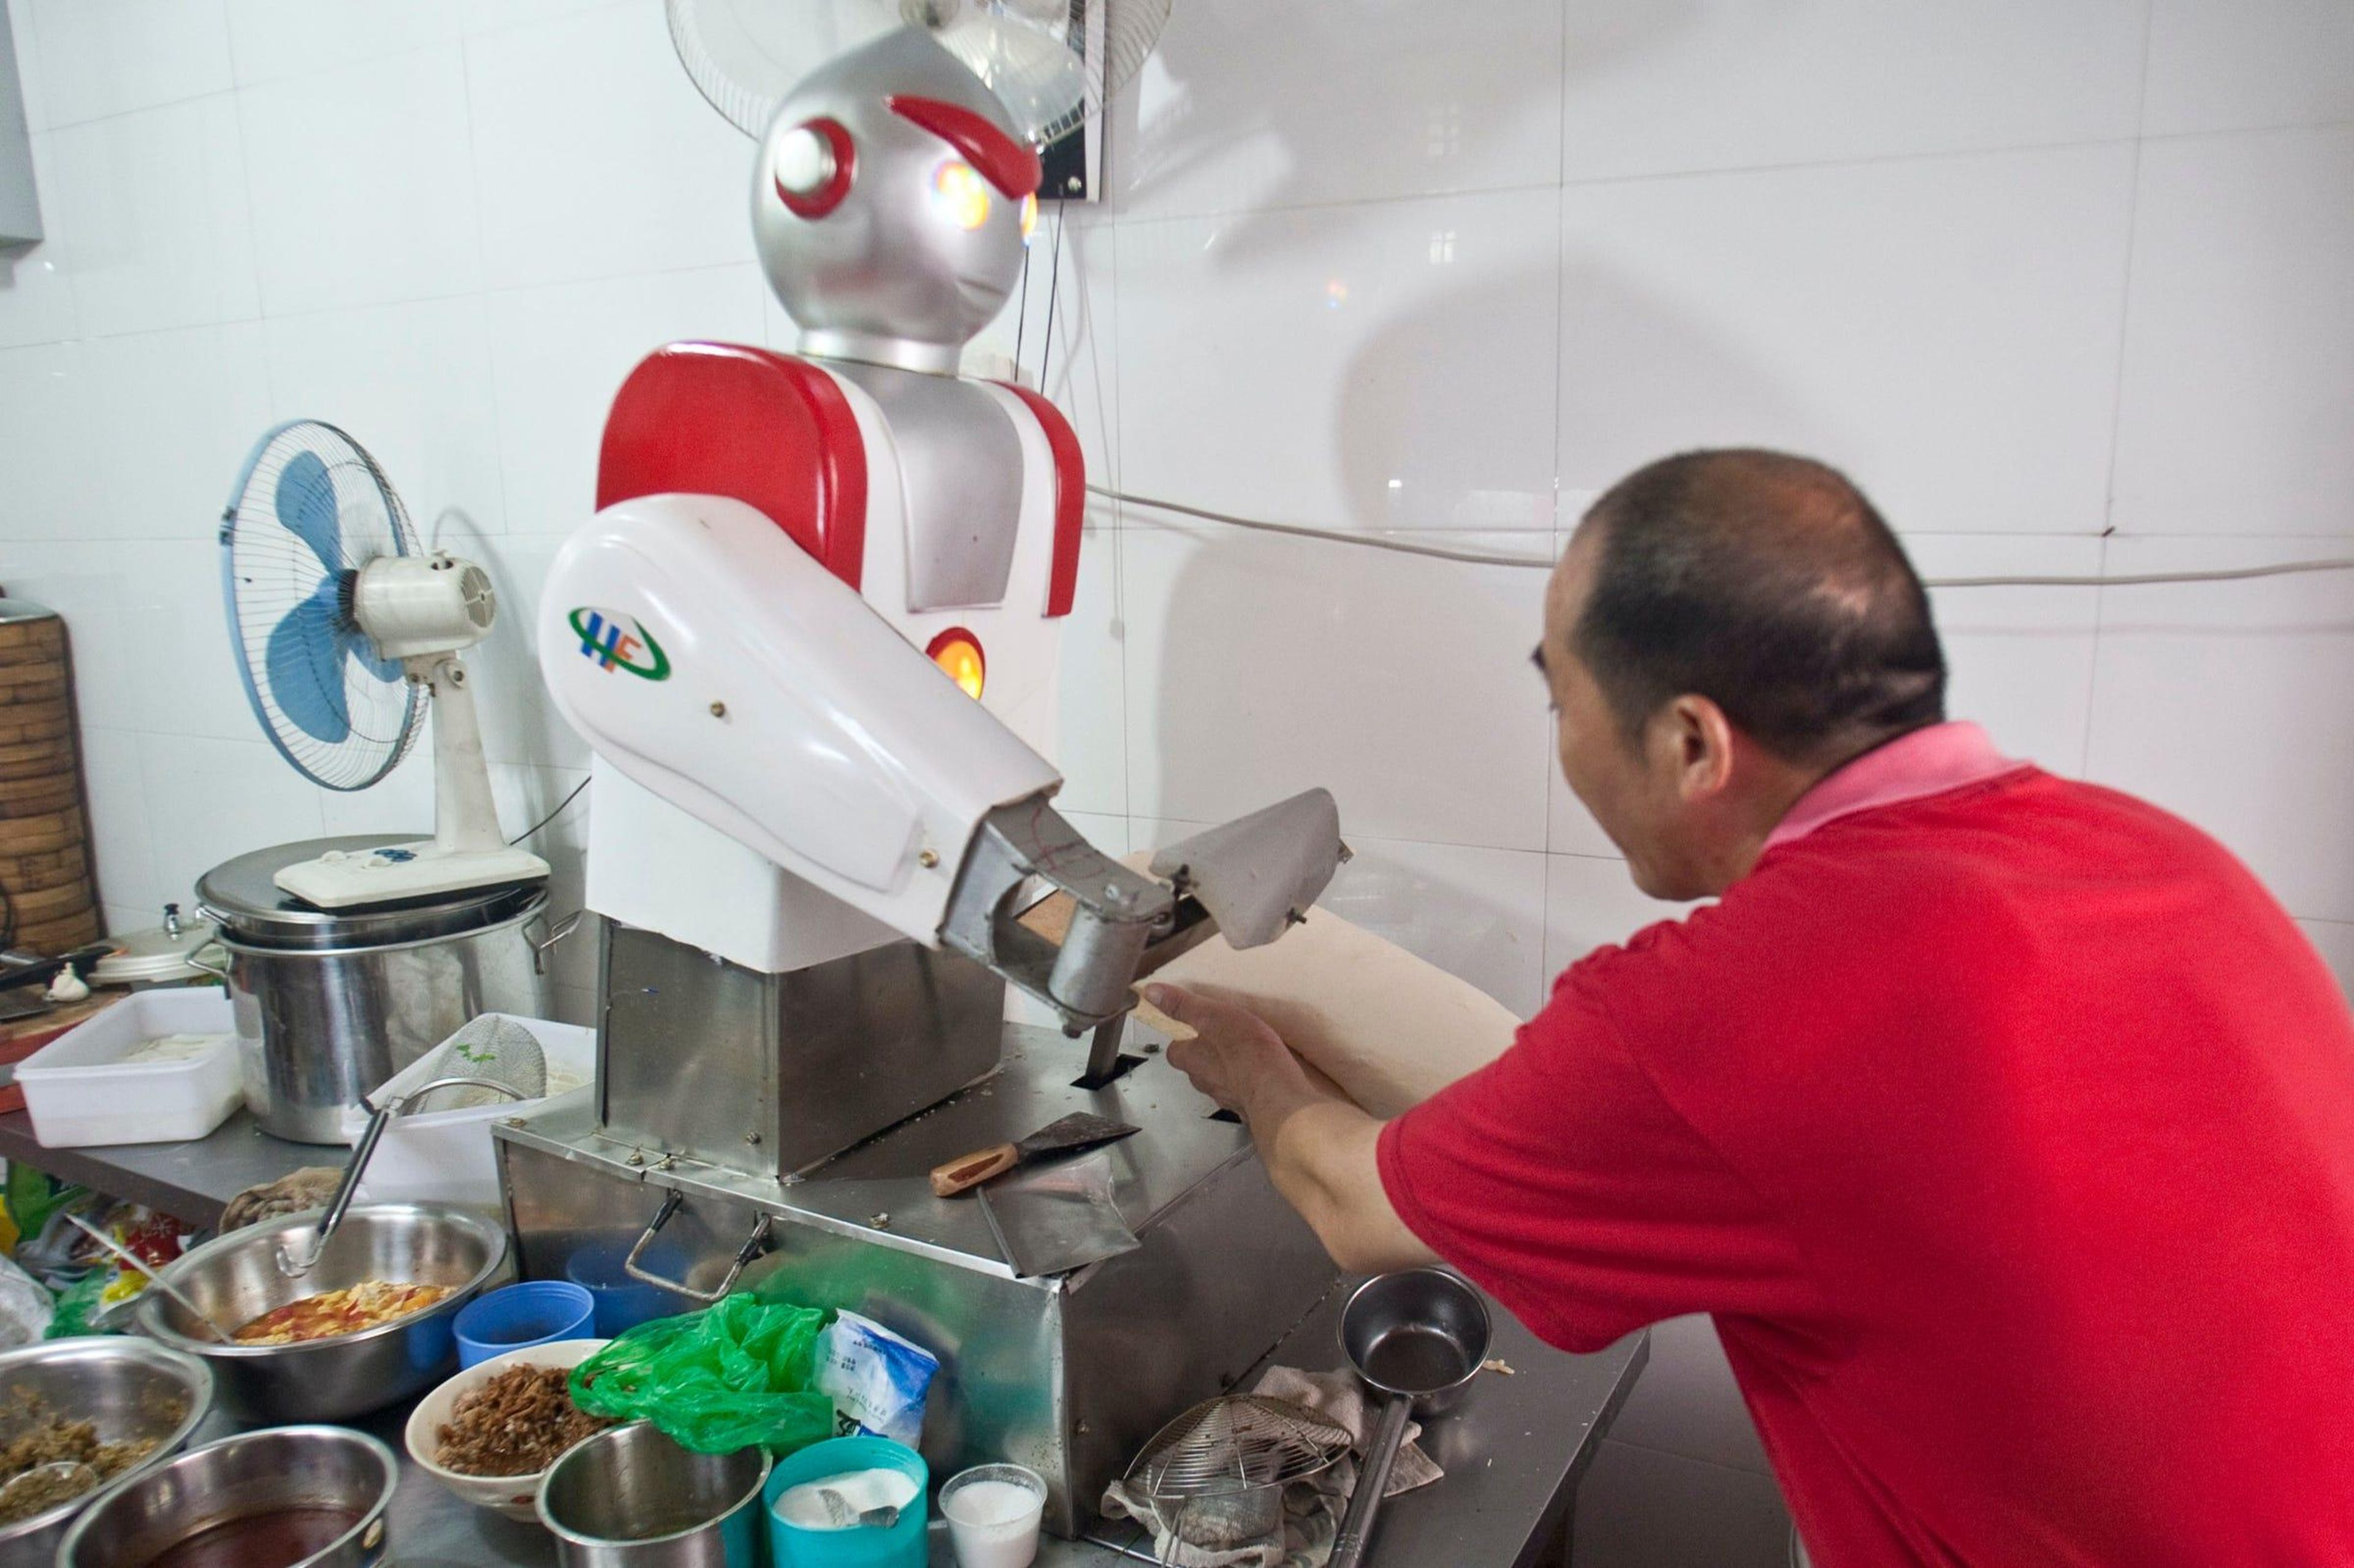 Un restaurante en Hangzhou, China, tiene un chef robot que se parece a Ultraman, un personaje de anime japonés. Este chef robot corta fideos en la cocina.